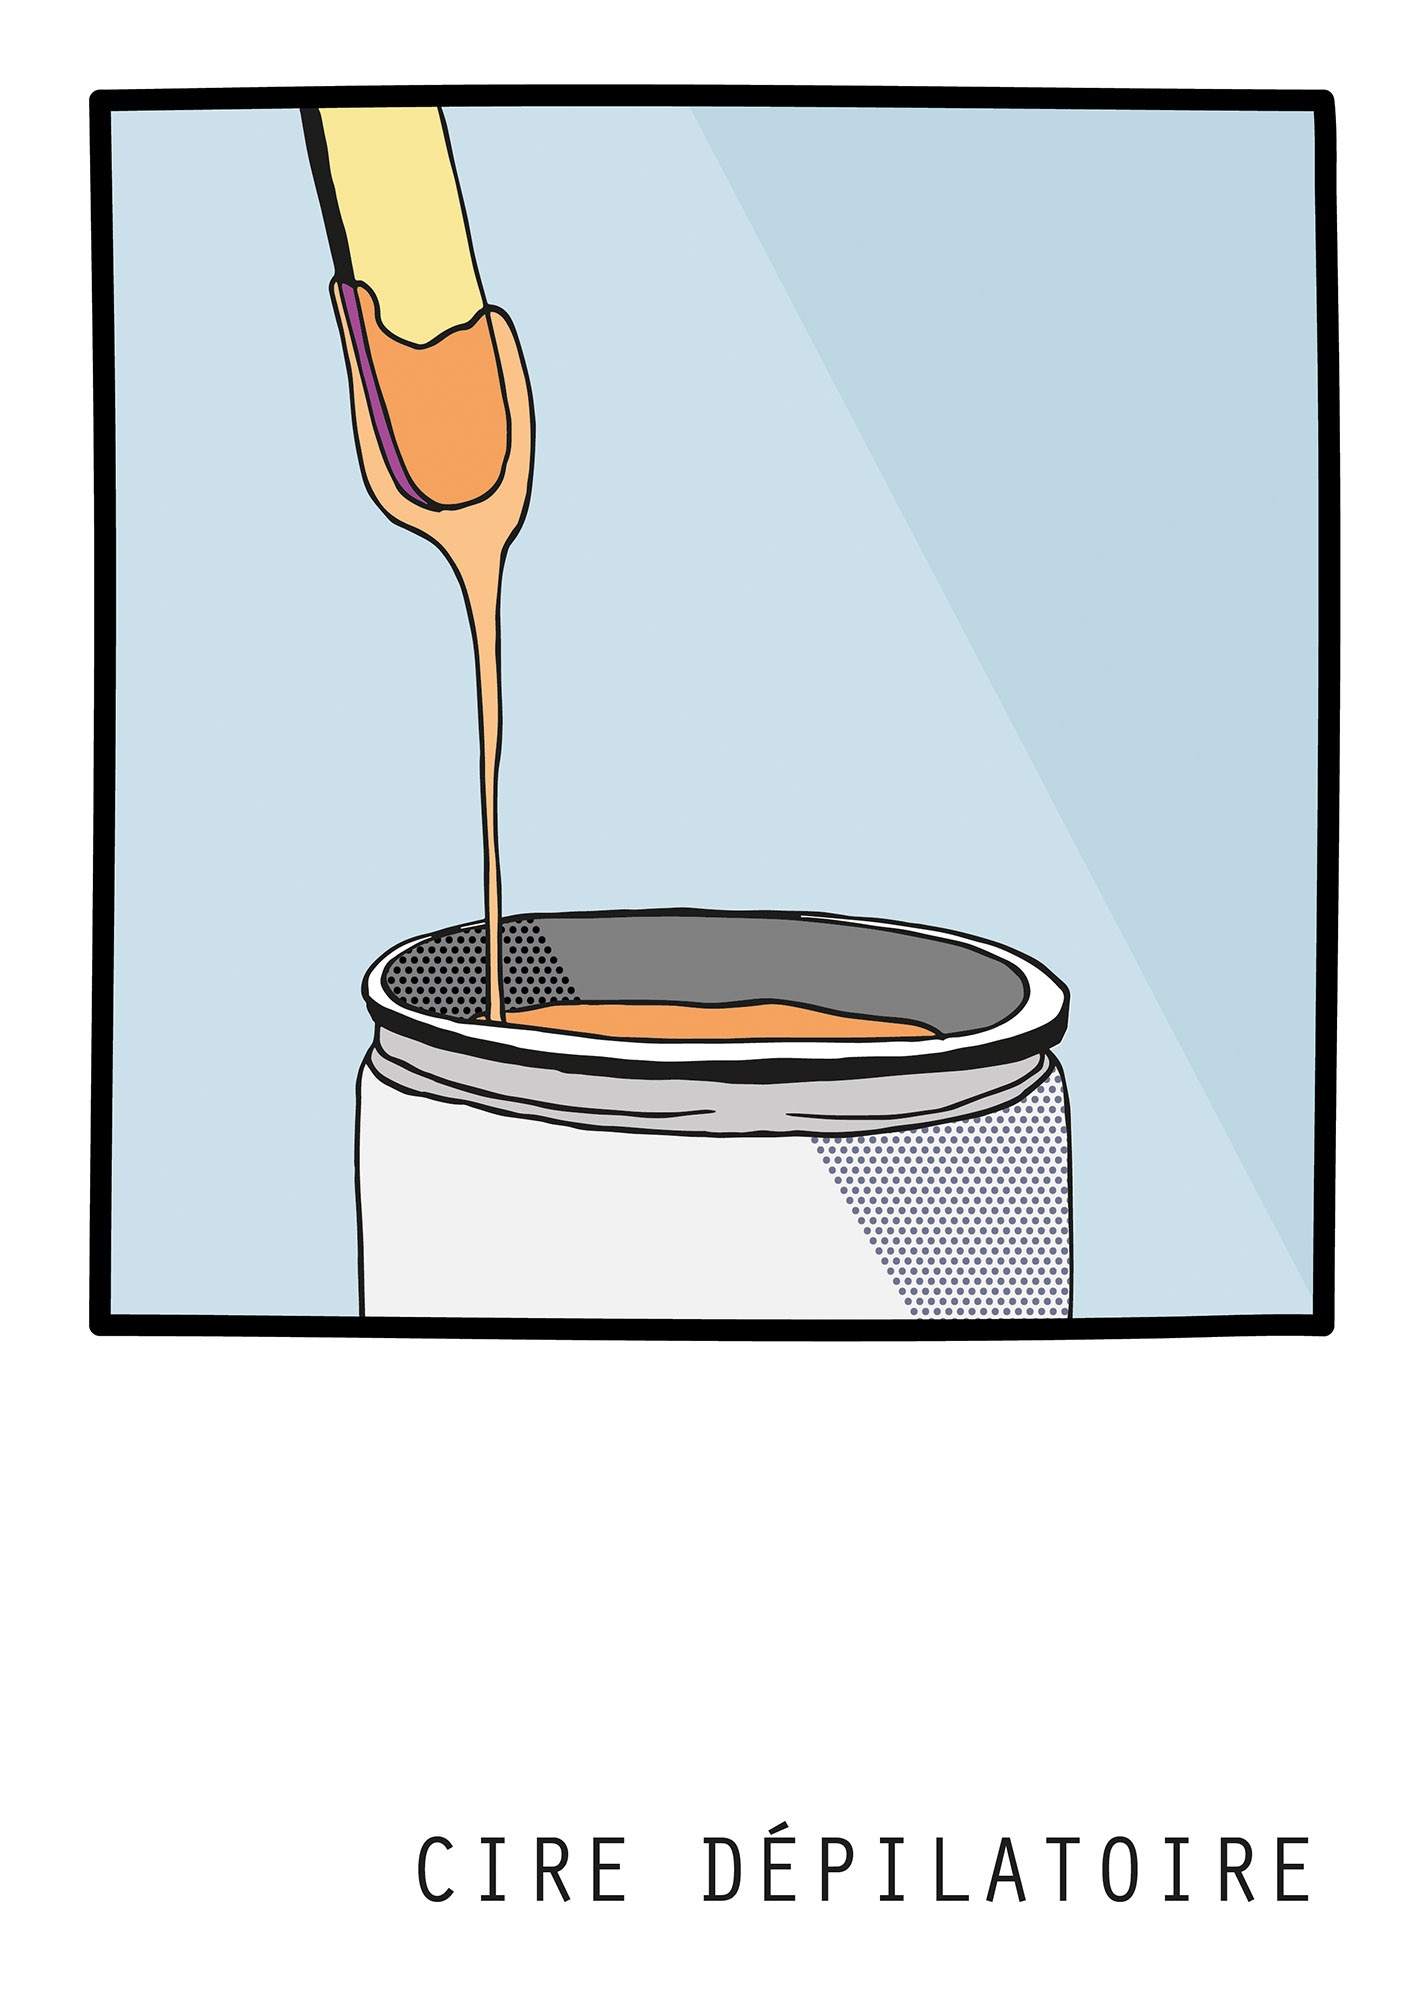 Illustration d'un pot de cire dépilatoire